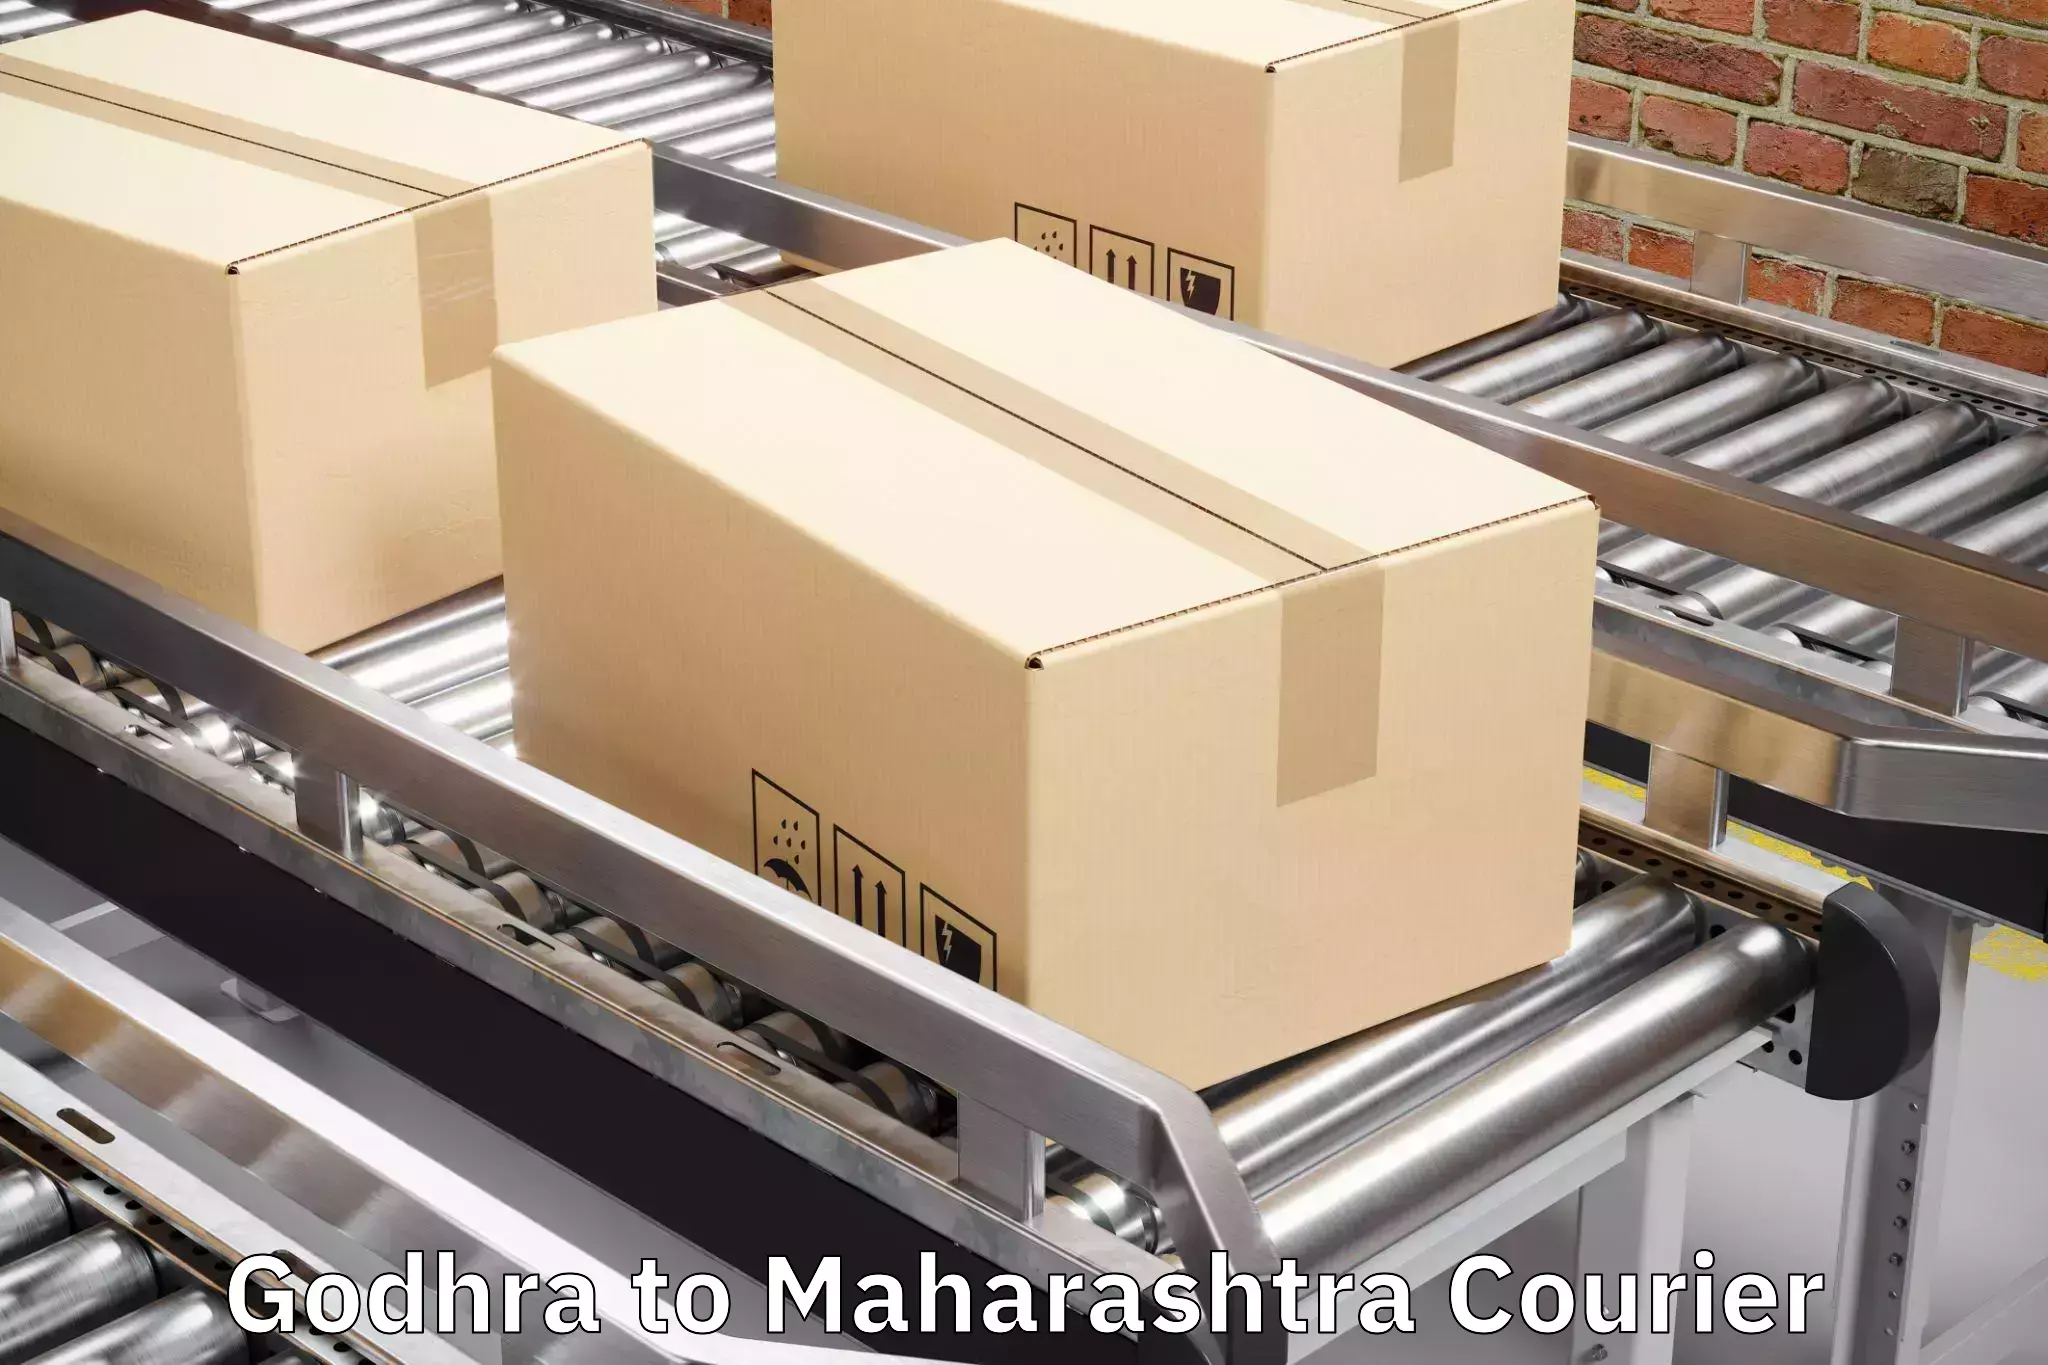 Luggage transport company Godhra to Maharashtra